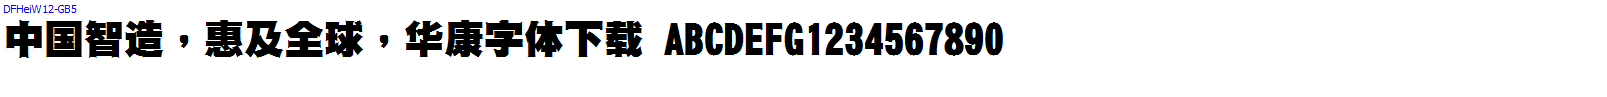 華康字體DFHeiW12-GB5.ttc